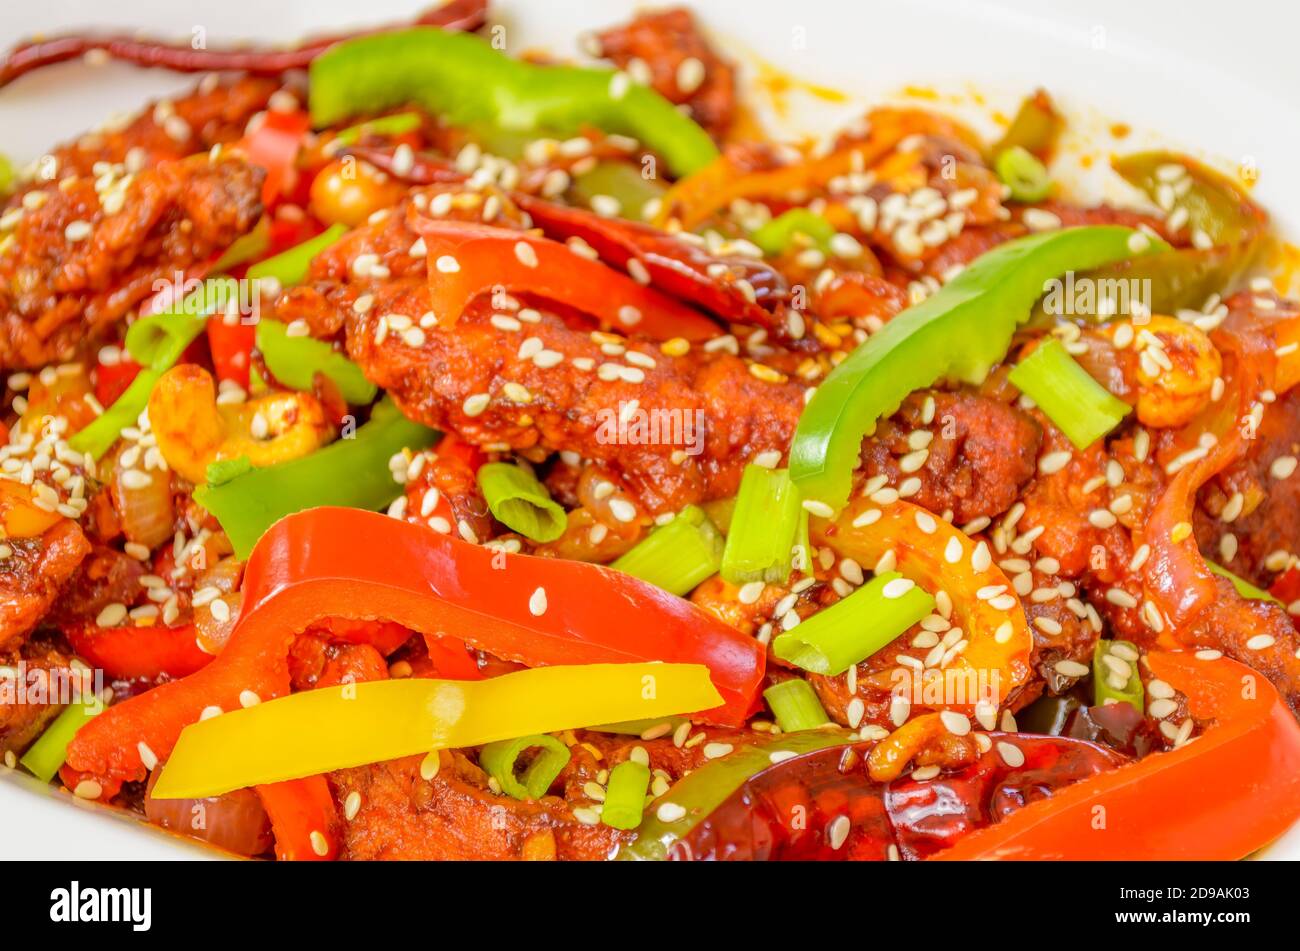 Nahaufnahme von chinesischem Gericht, hausgemachtes Dragon Chicken mit Paprika in einer Schüssel. Food Fotografie Hintergrund. Stockfoto